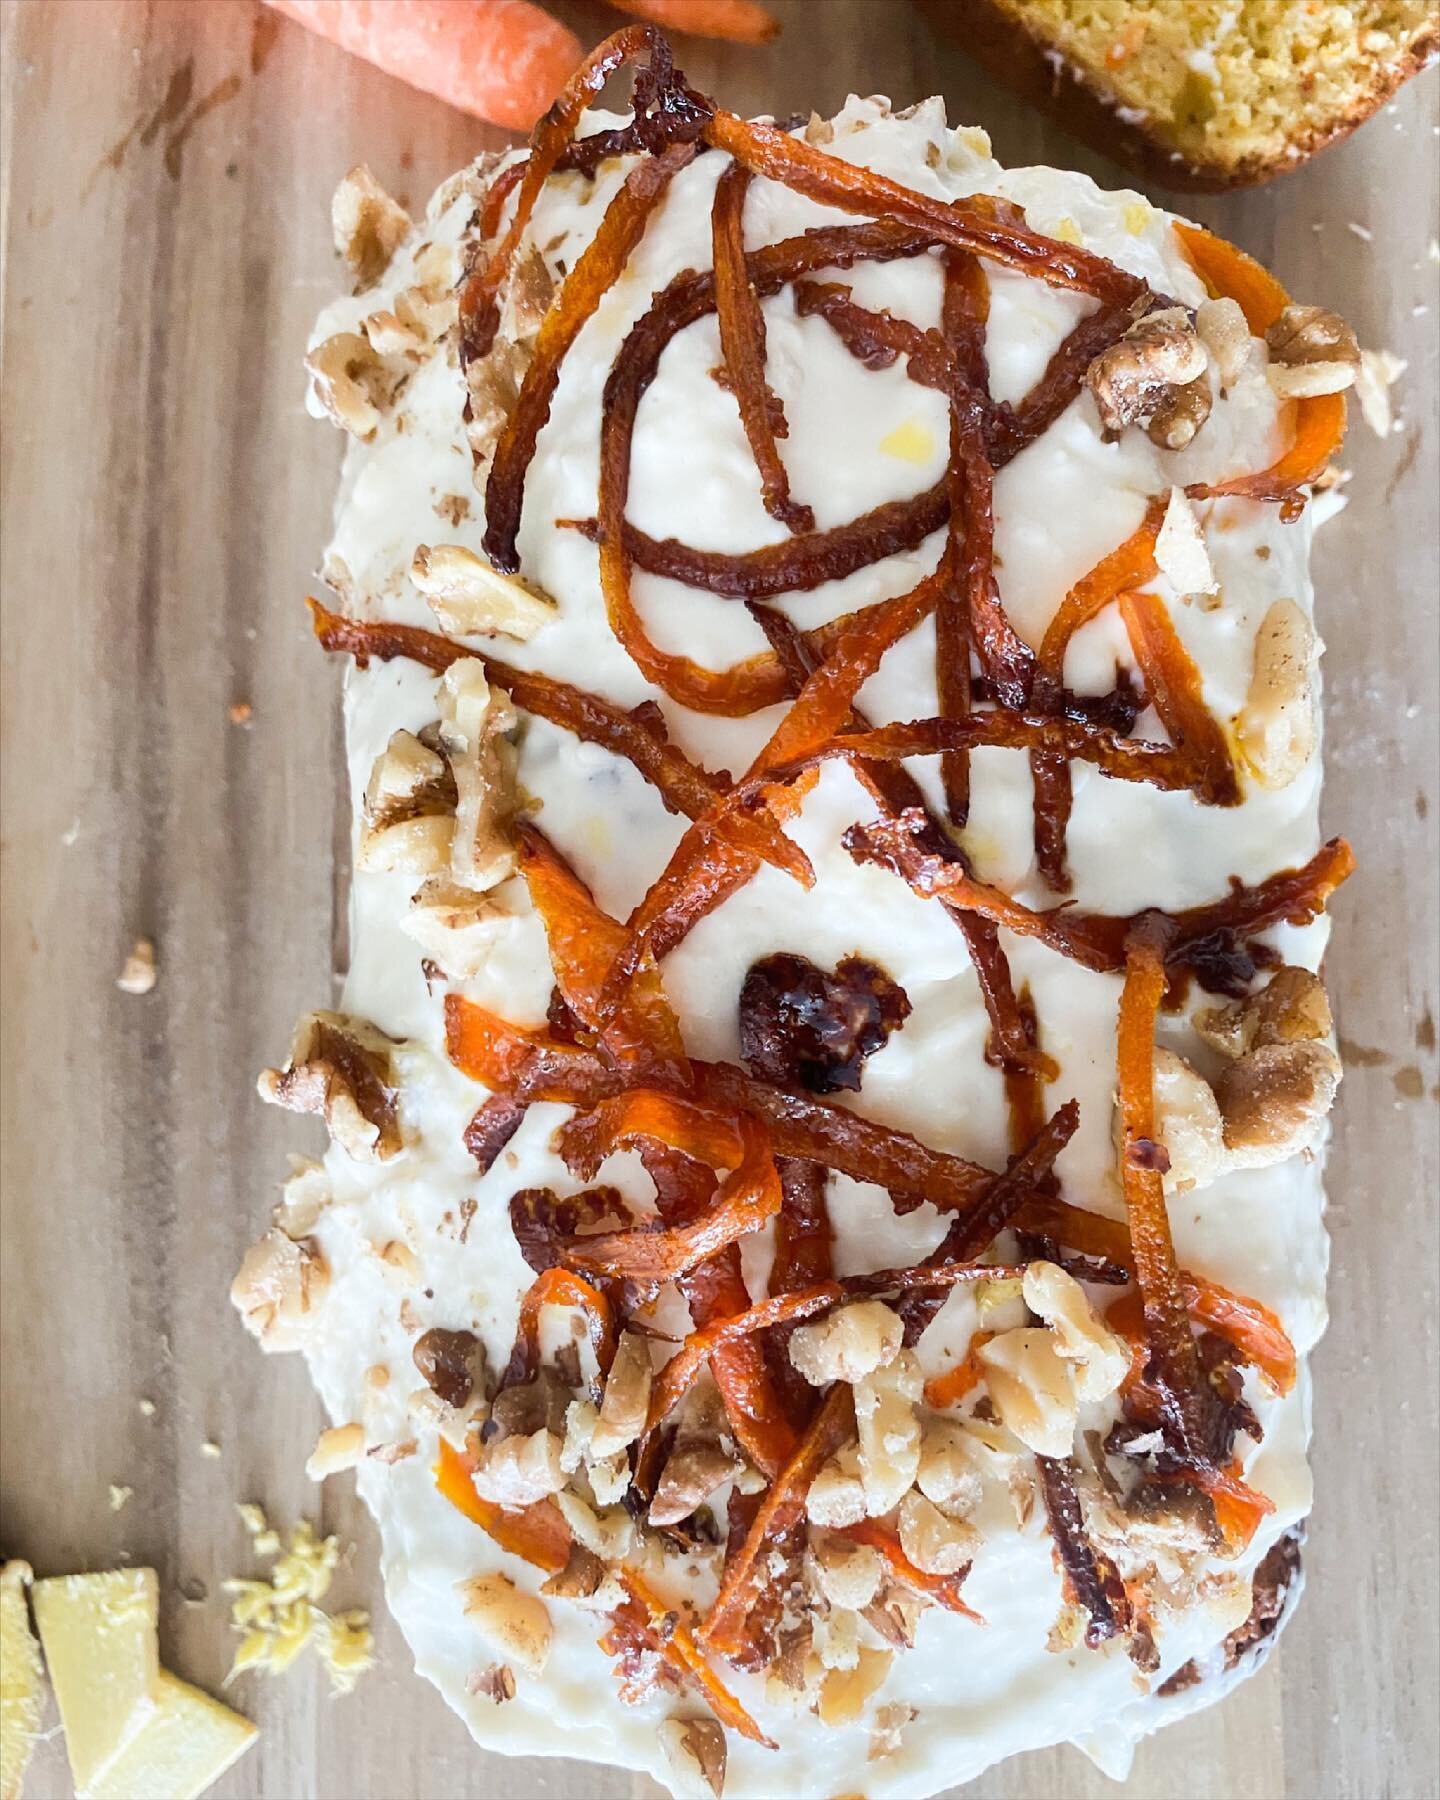 Un bizcochito de zanahoria con dos twists: &iexcl;miso y gengibre! Receta en el link en bio ⬆️ #carrotcake #bizcochodezanahoria #cakes #misocake